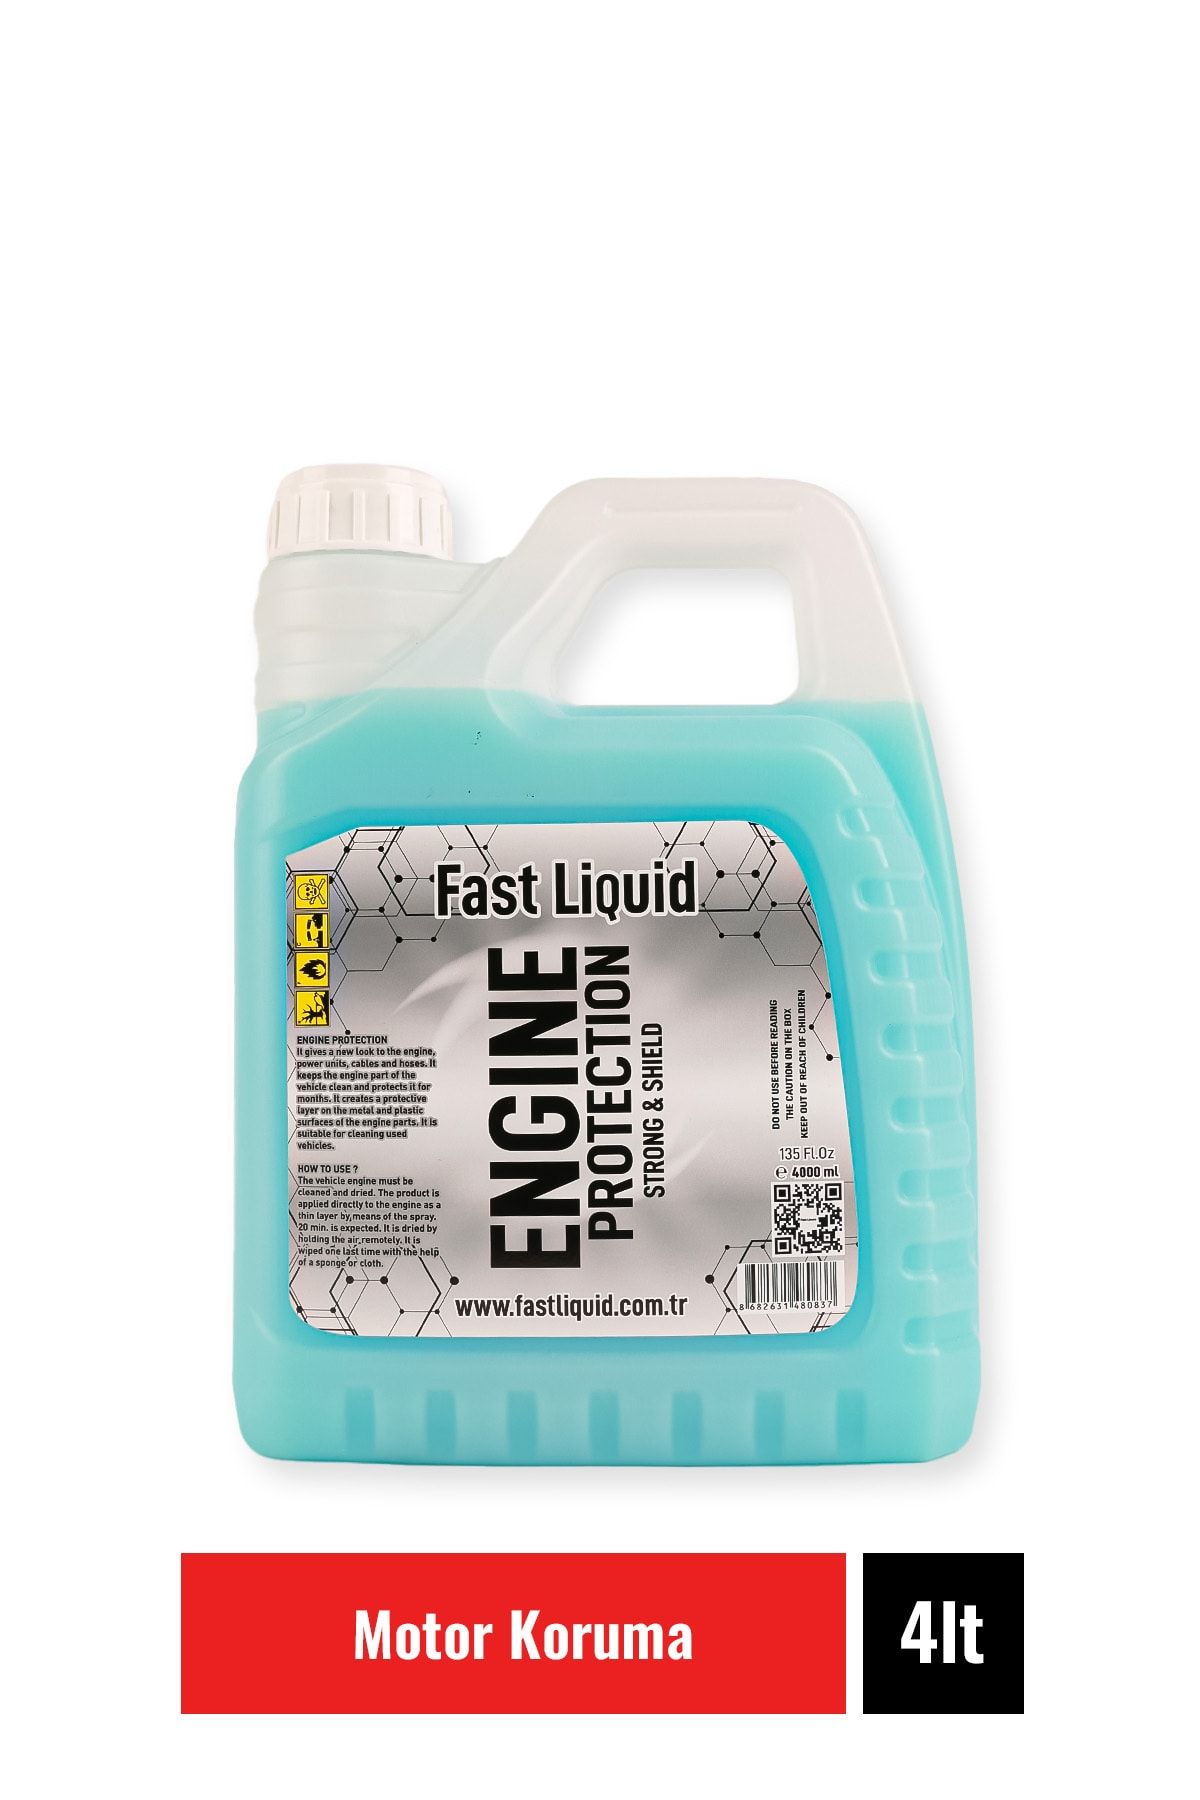 Fast Liquid Engıne Protectıon 4 Lt - Motor Koruma & Parlatıcı & Yeni Görünüm